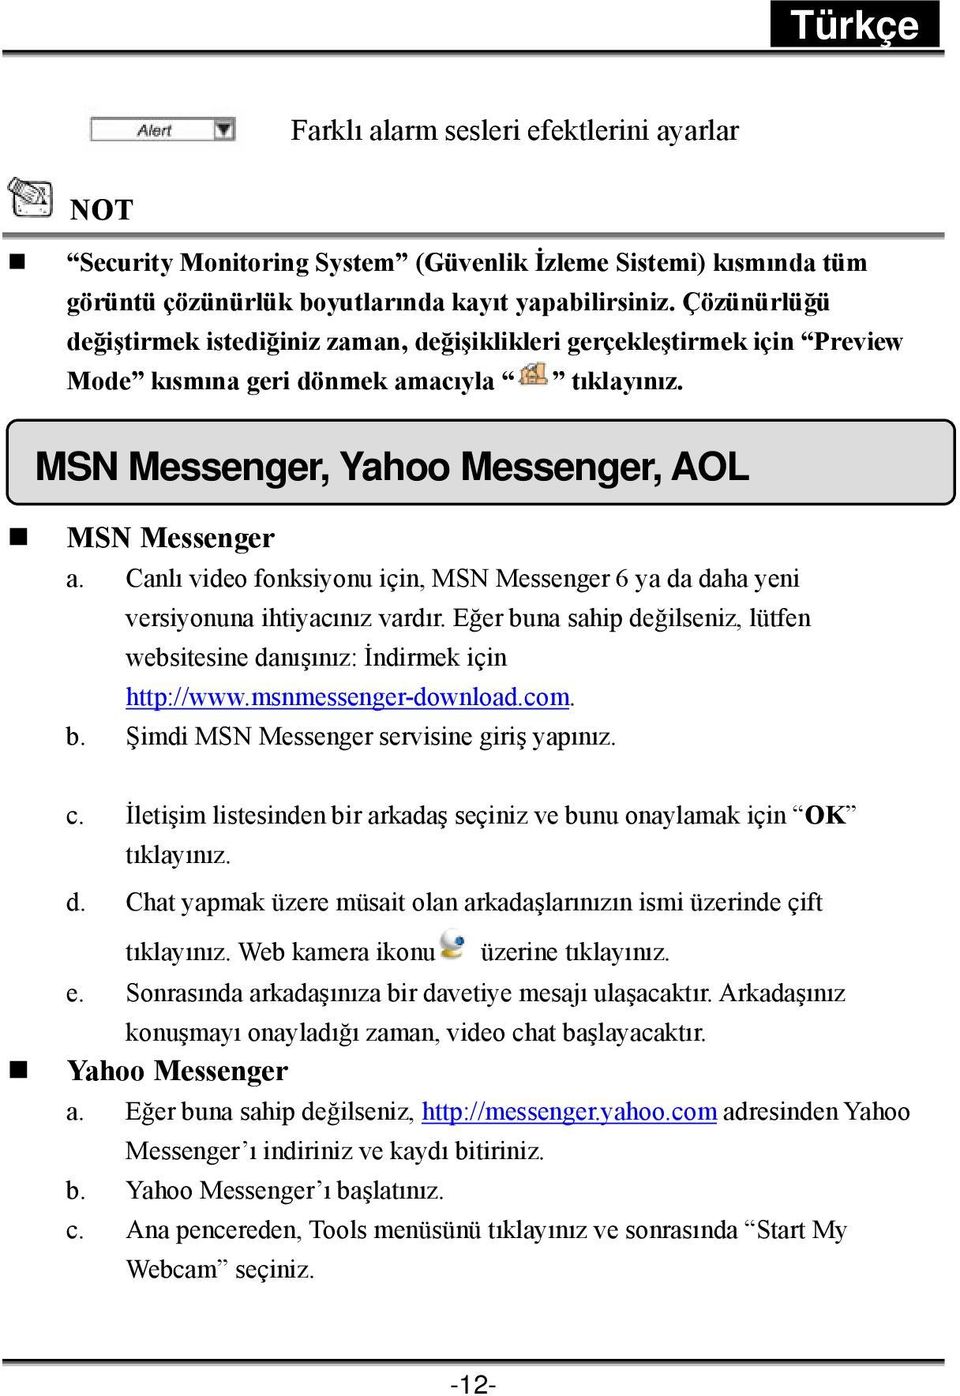 Canlı video fonksiyonu için, MSN Messenger 6 ya da daha yeni versiyonuna ihtiyacınız vardır. Eğer buna sahip değilseniz, lütfen websitesine danışınız: İndirmek için http://www.msnmessenger-download.